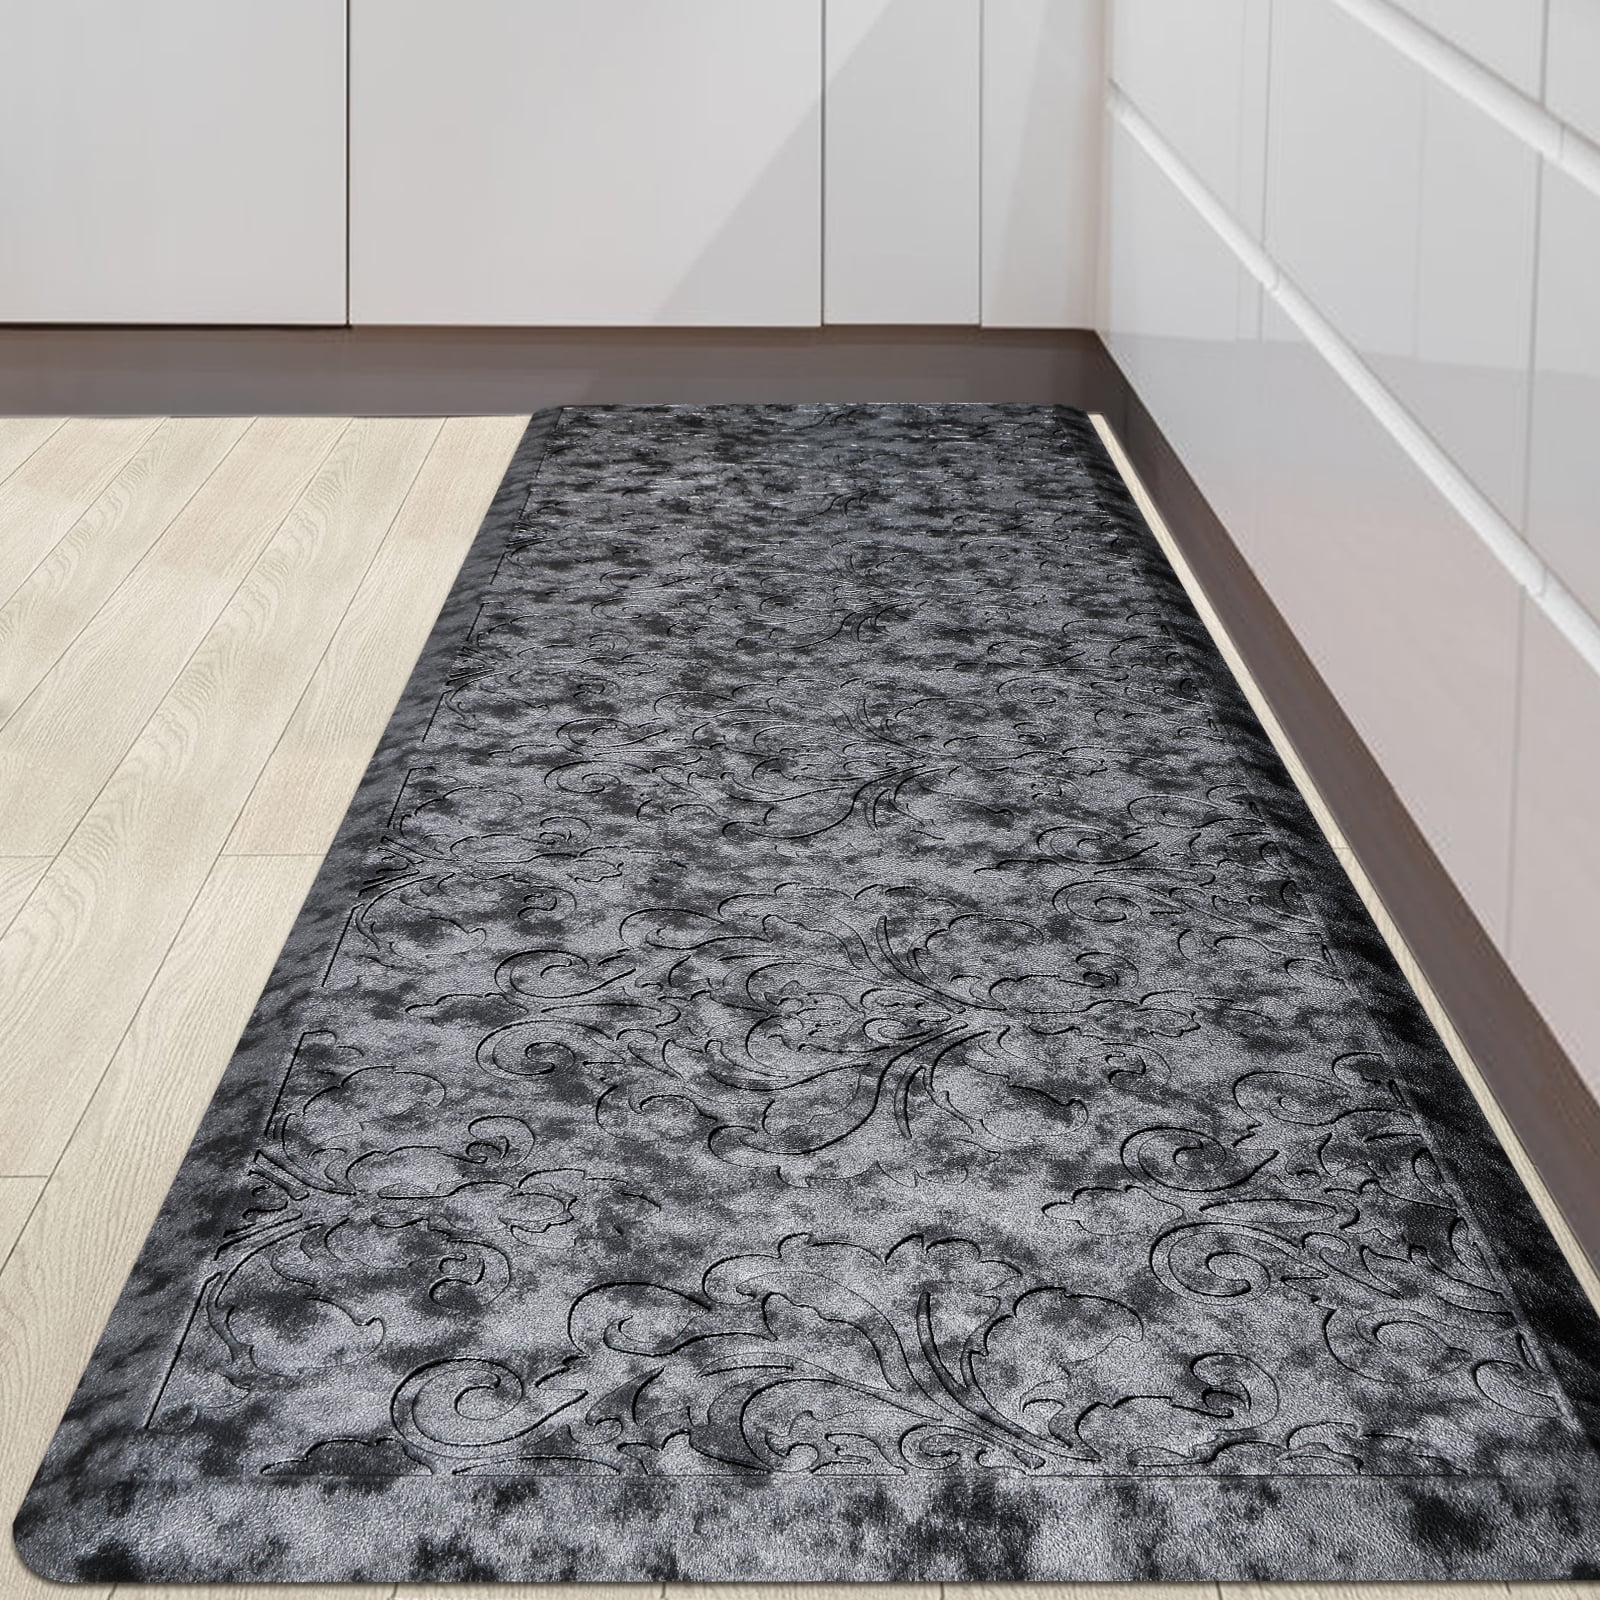 65367円 【86%OFF!】 RHS Snow Melting Mat AntiーSlip Walkway Herringbone Design Color Gray Out